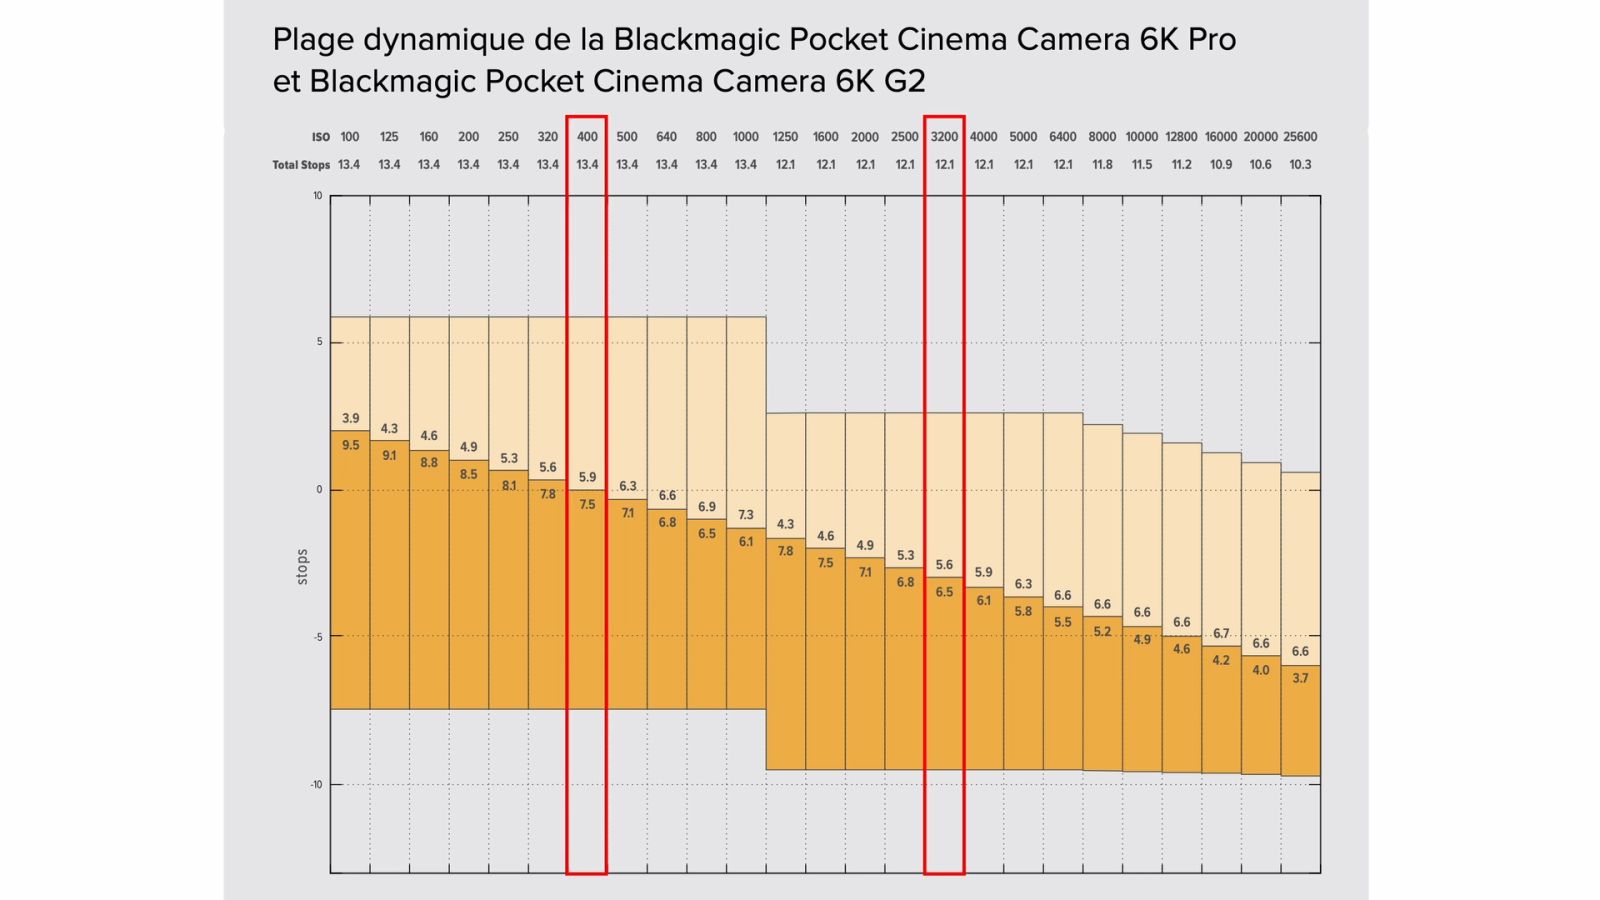 Plage dynamique de la Blackmagic Pocket Cinema Camera 6K Pro et 6K G2